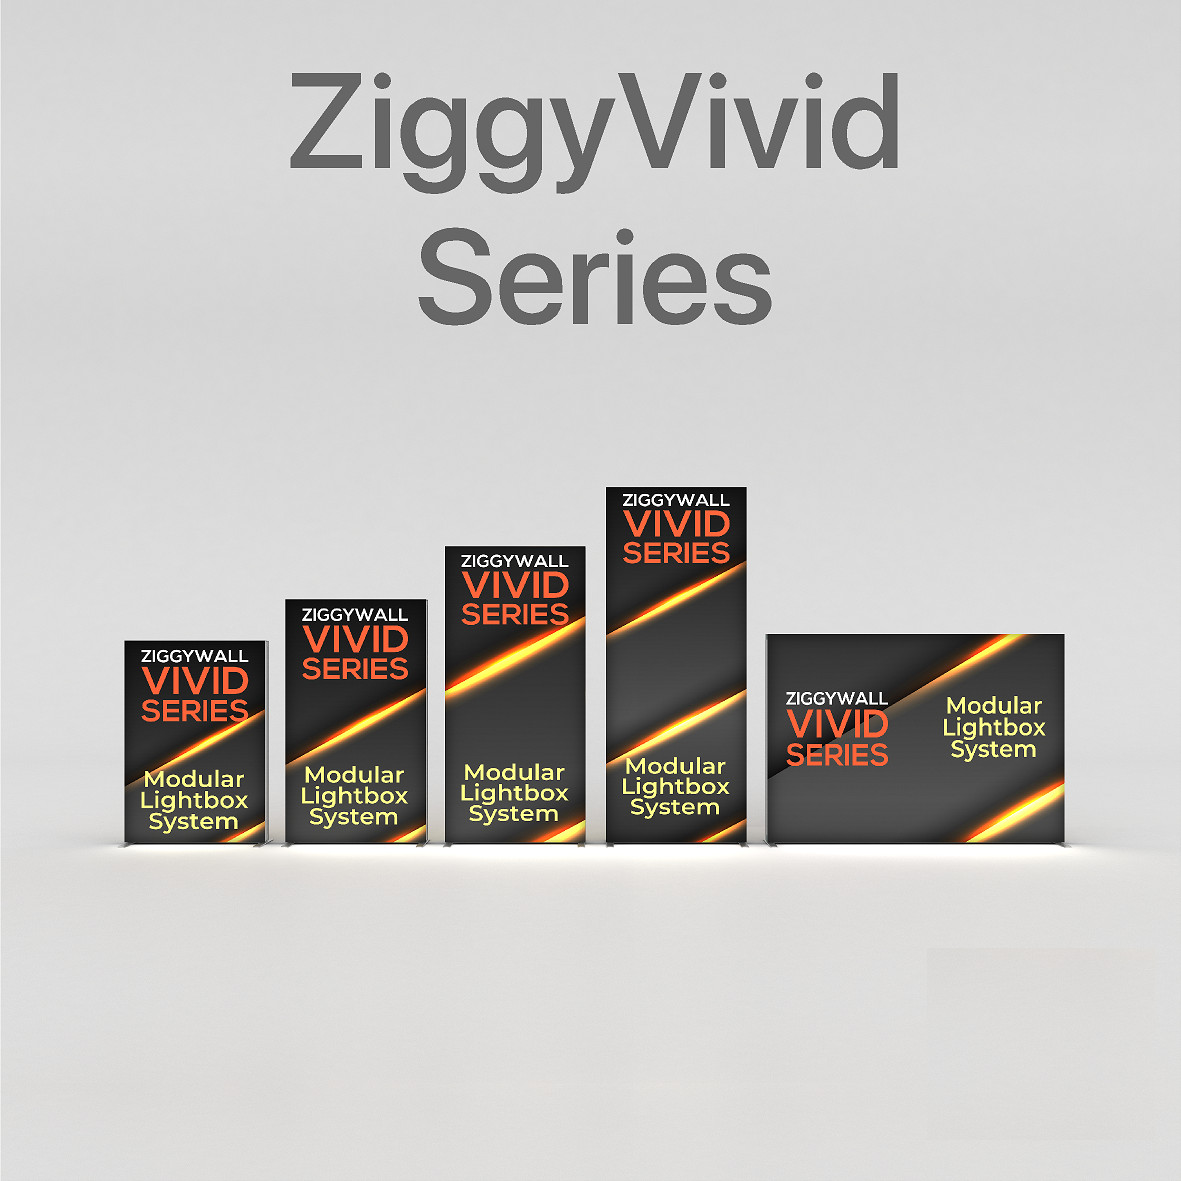 ZiggyVivid Series